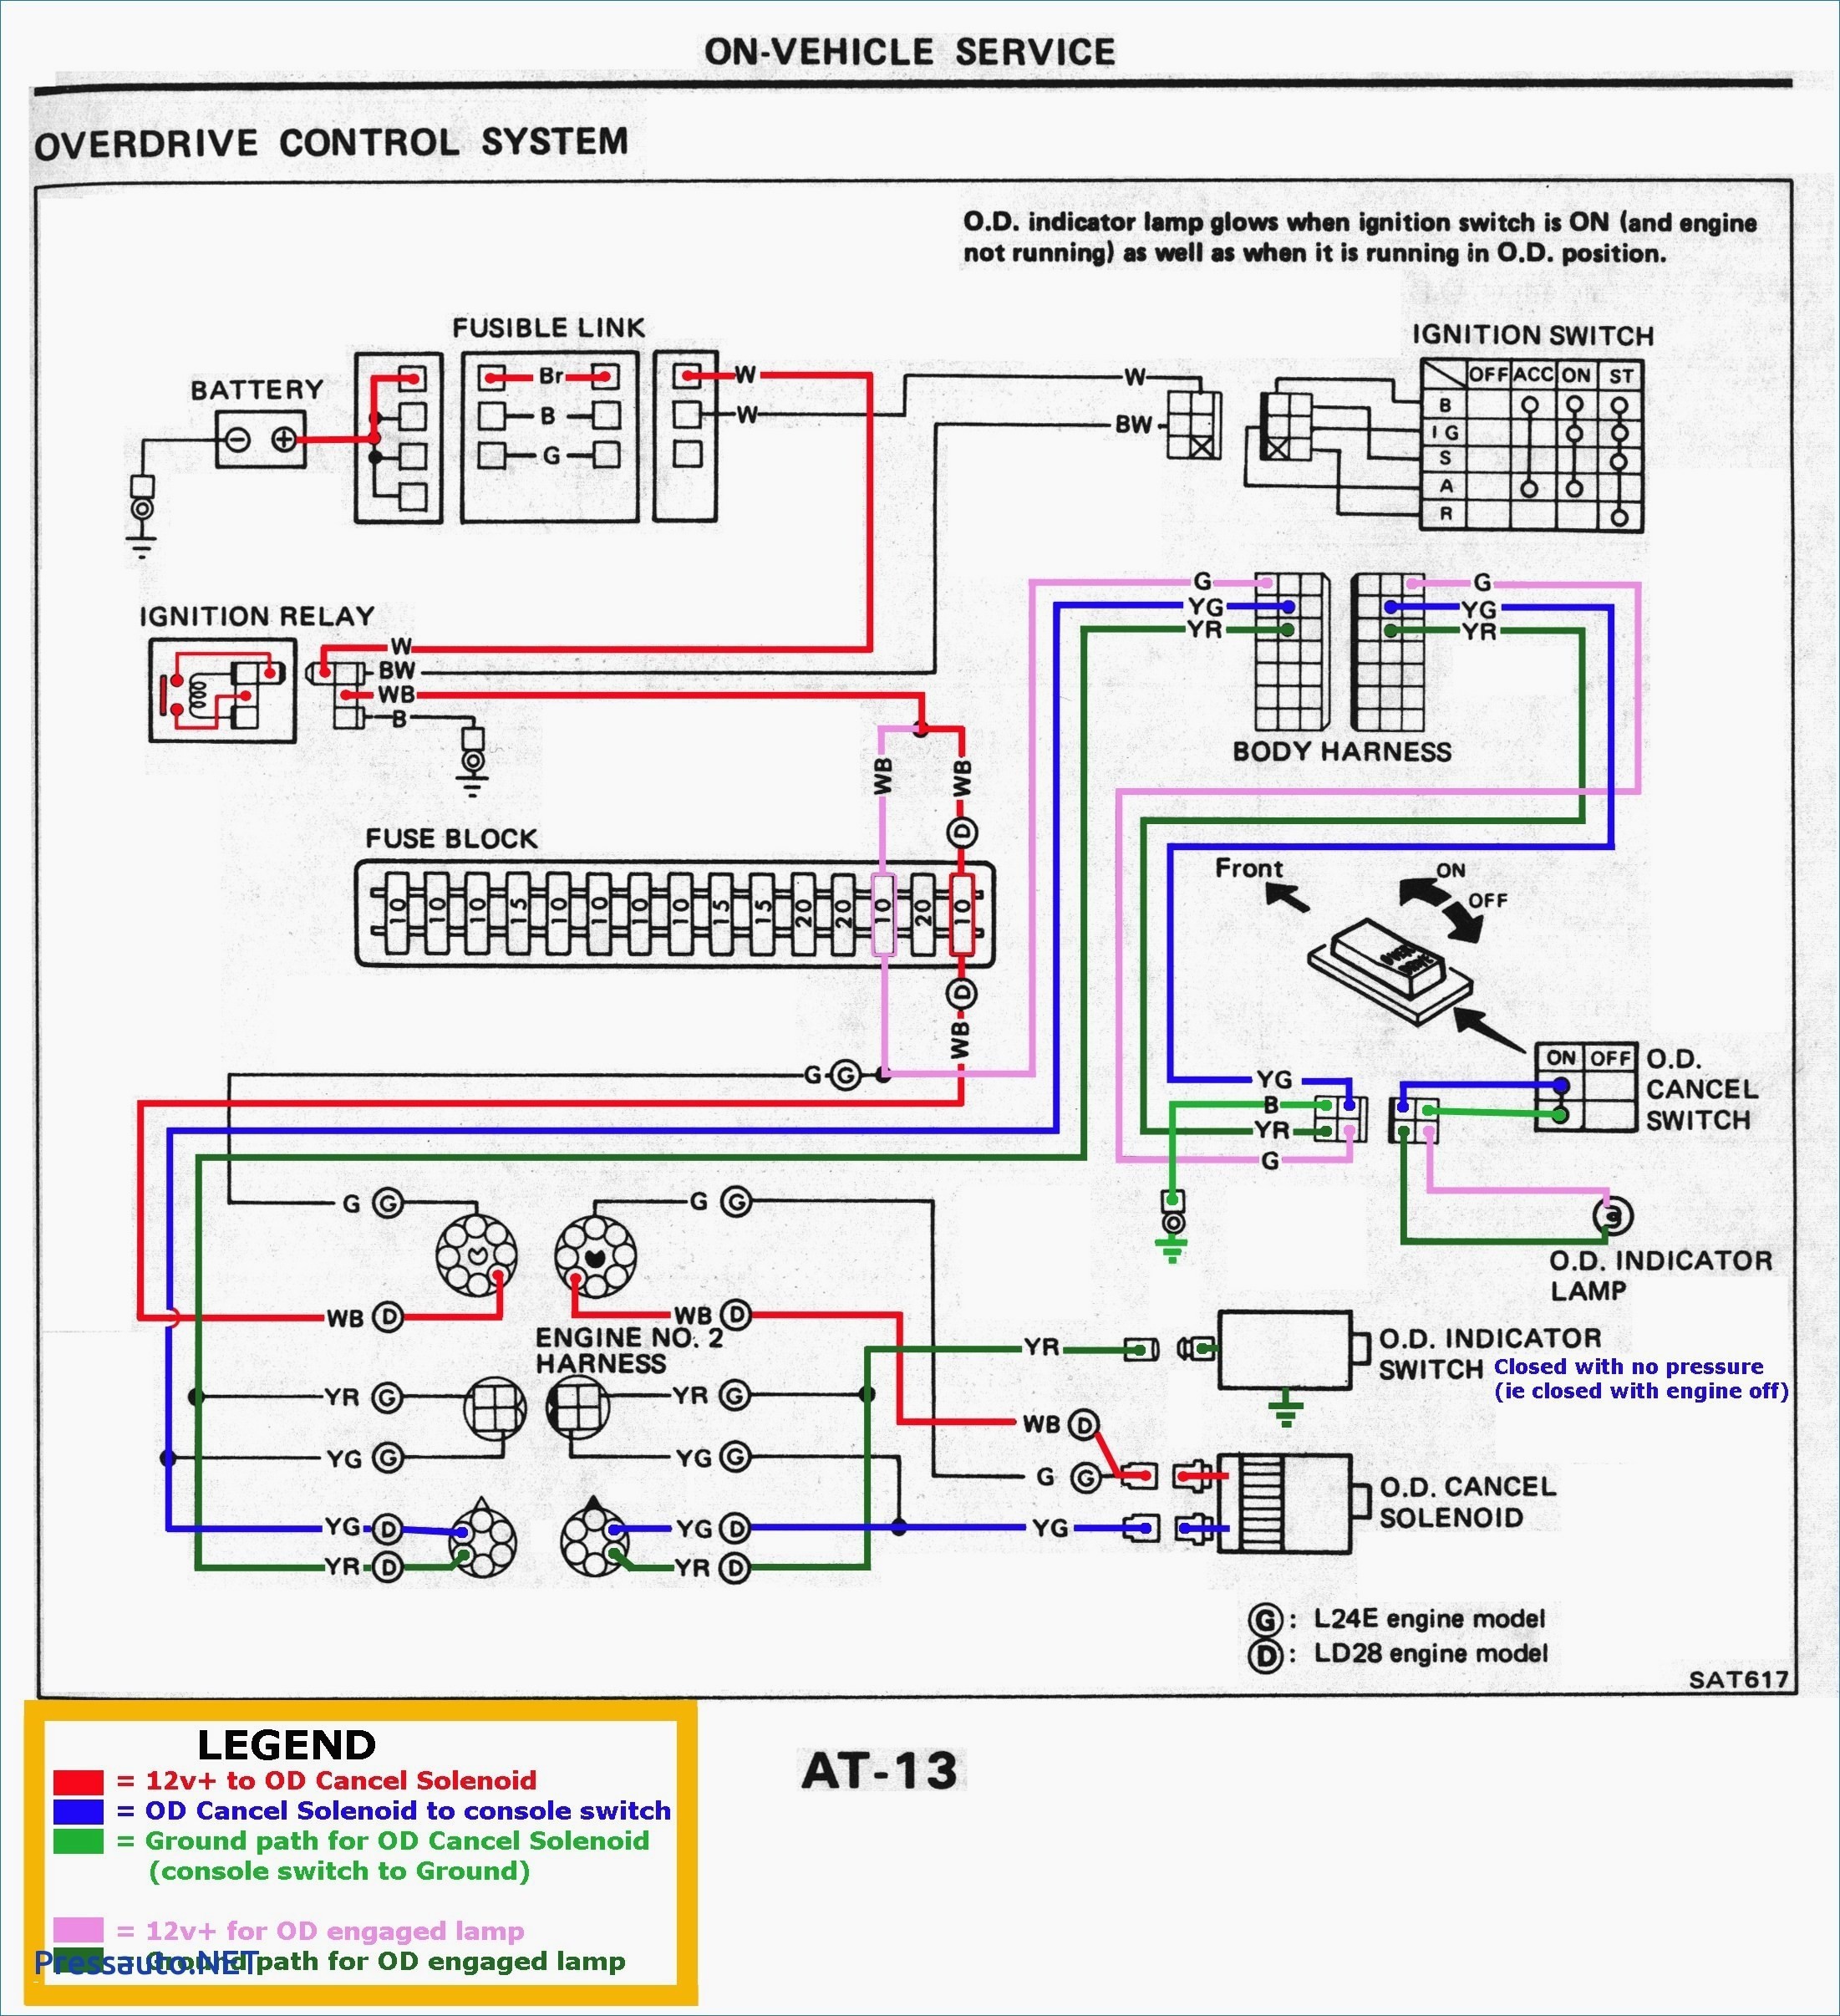 wiring diagram ptz cameras outdoor manual e books Outdoor Security Camera Wiring wiring diagram ptz cameras